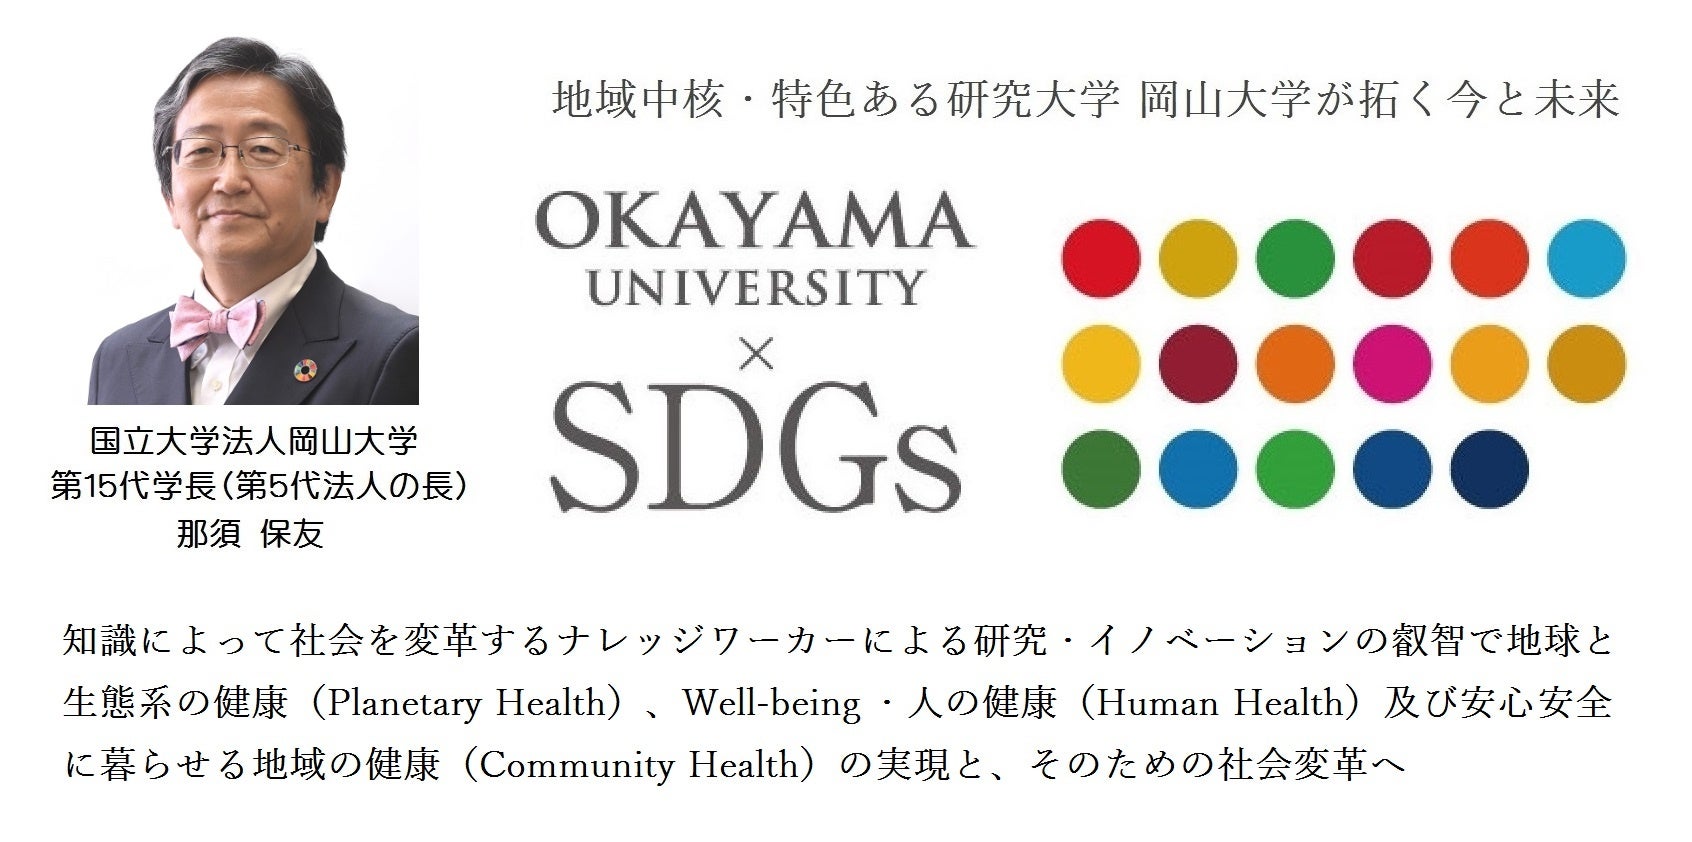 【岡山大学】中小機構「中四国スタートアップ応援セミナー」に那須保友学長が登壇しました